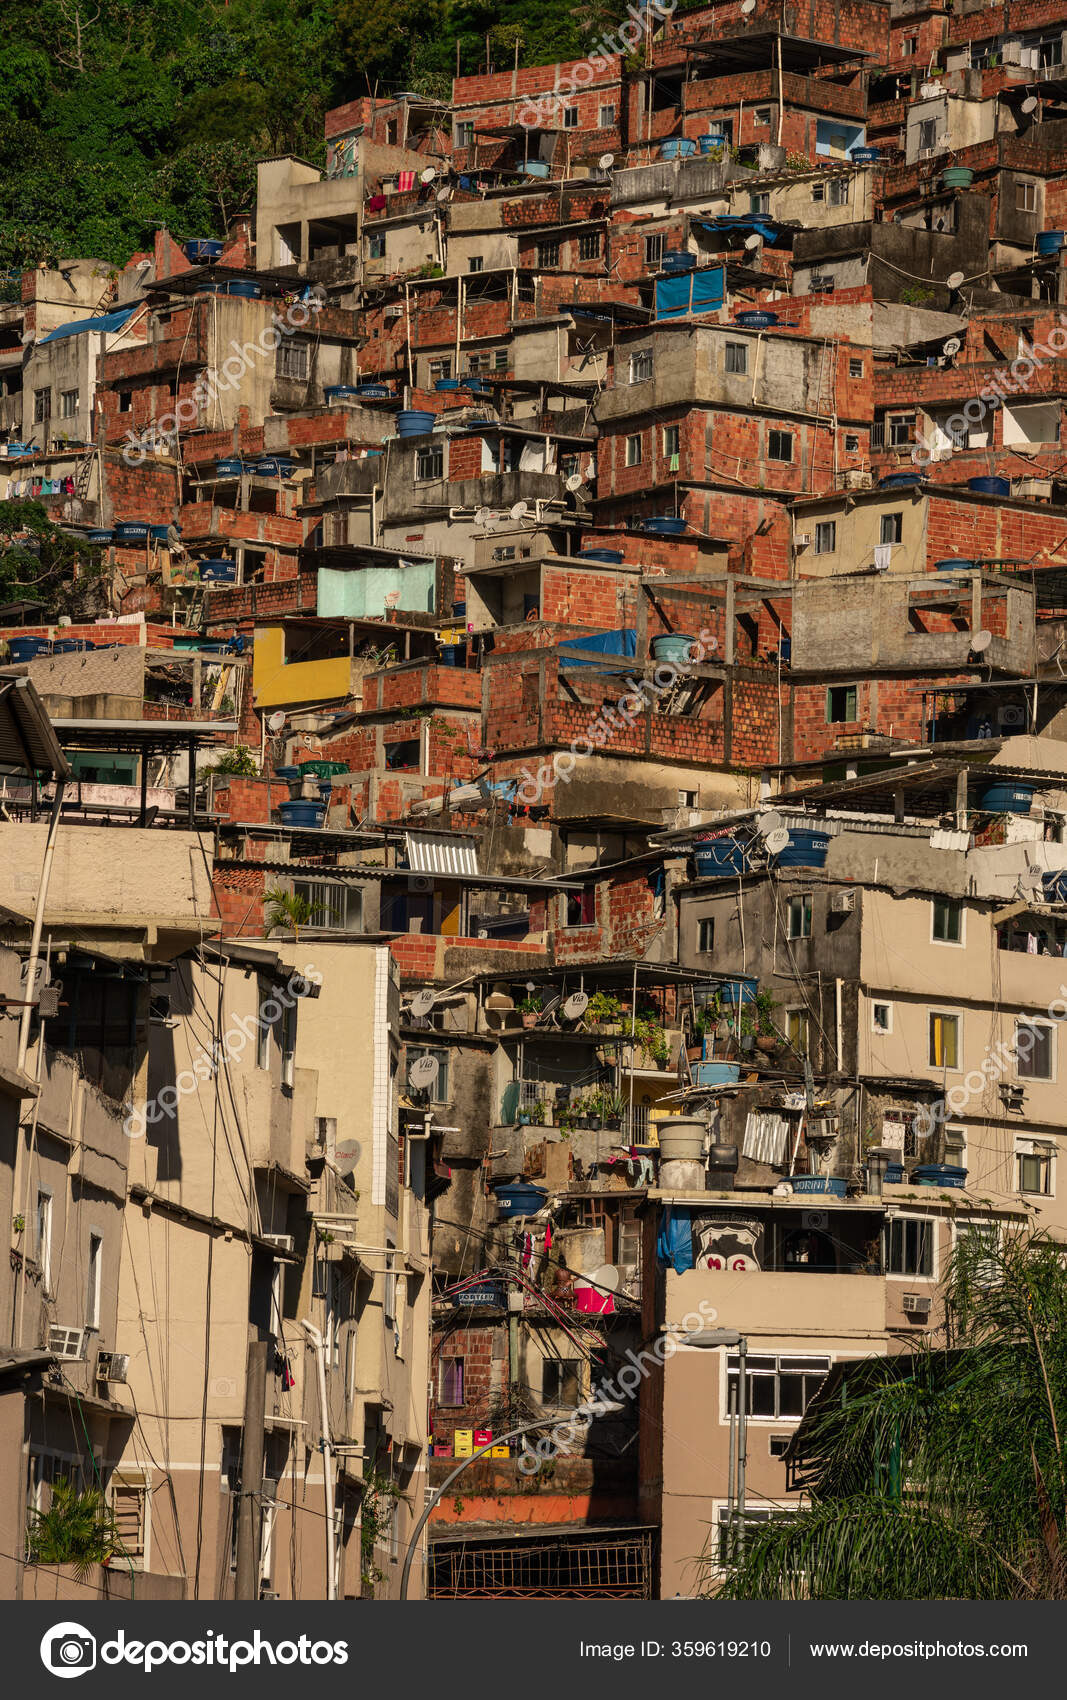 https://st3.depositphotos.com/19011158/35961/i/1600/depositphotos_359619210-stock-photo-close-shot-rocinha-favela-rio.jpg